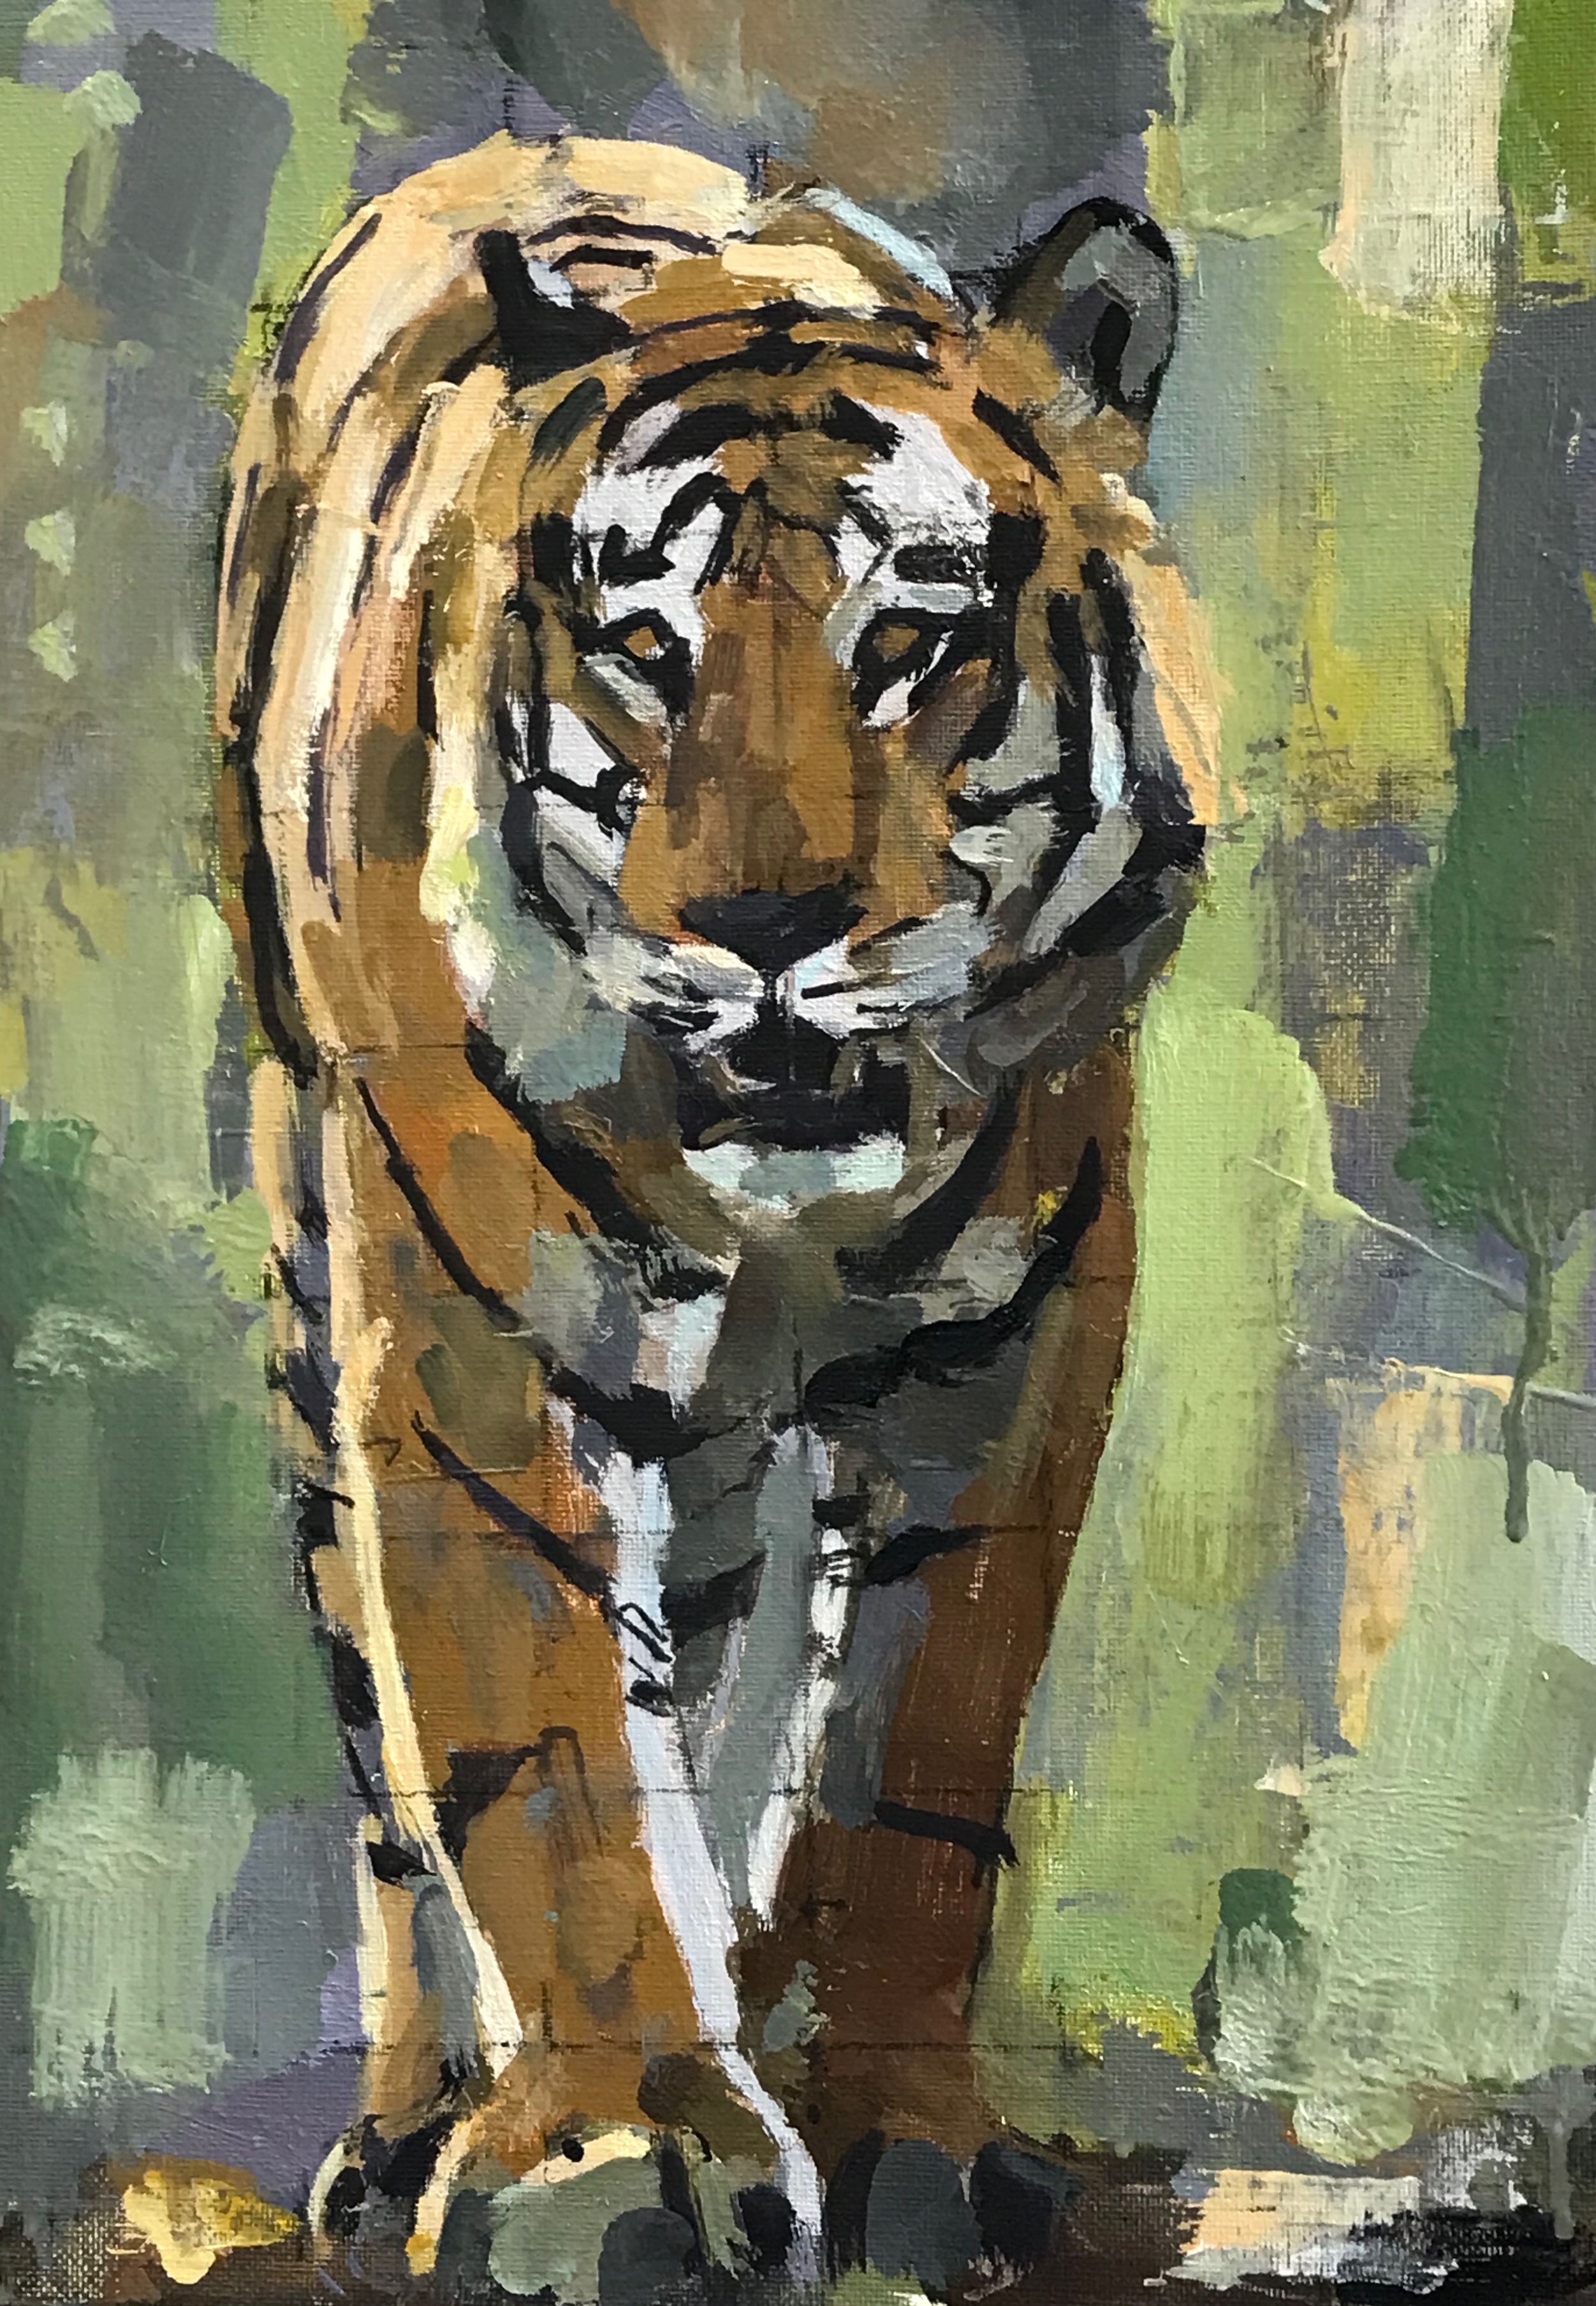   Bengal Tiger by John Dobbs